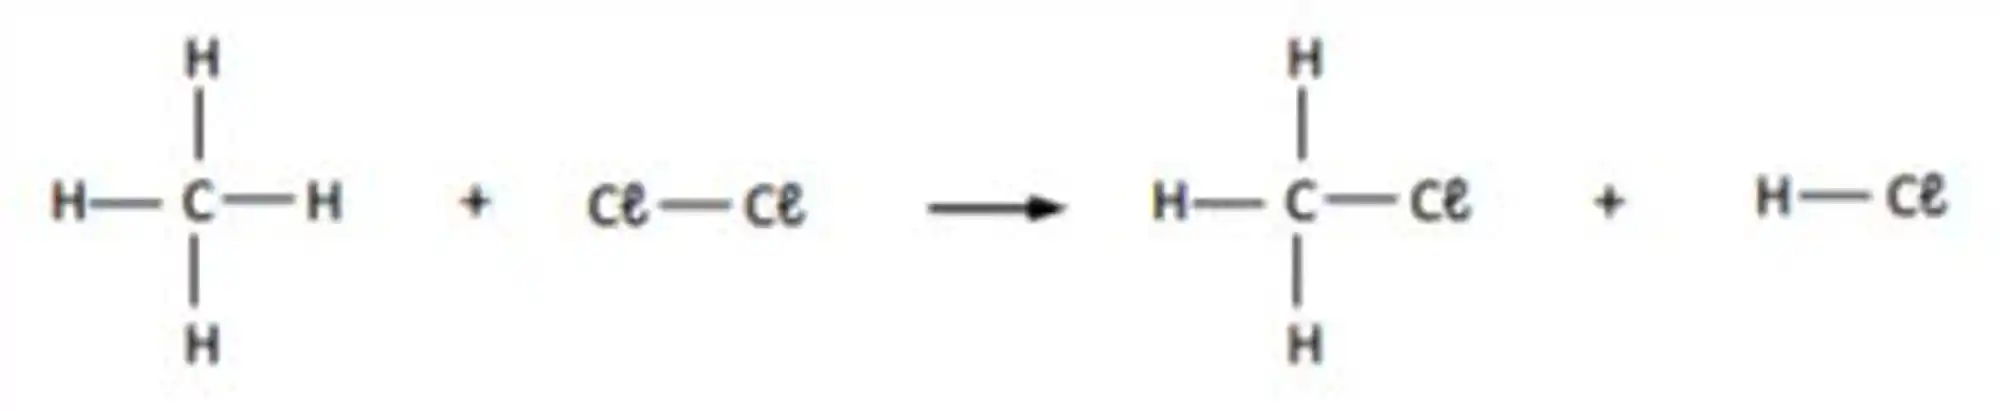 Reações de substituição do metano com halogênio